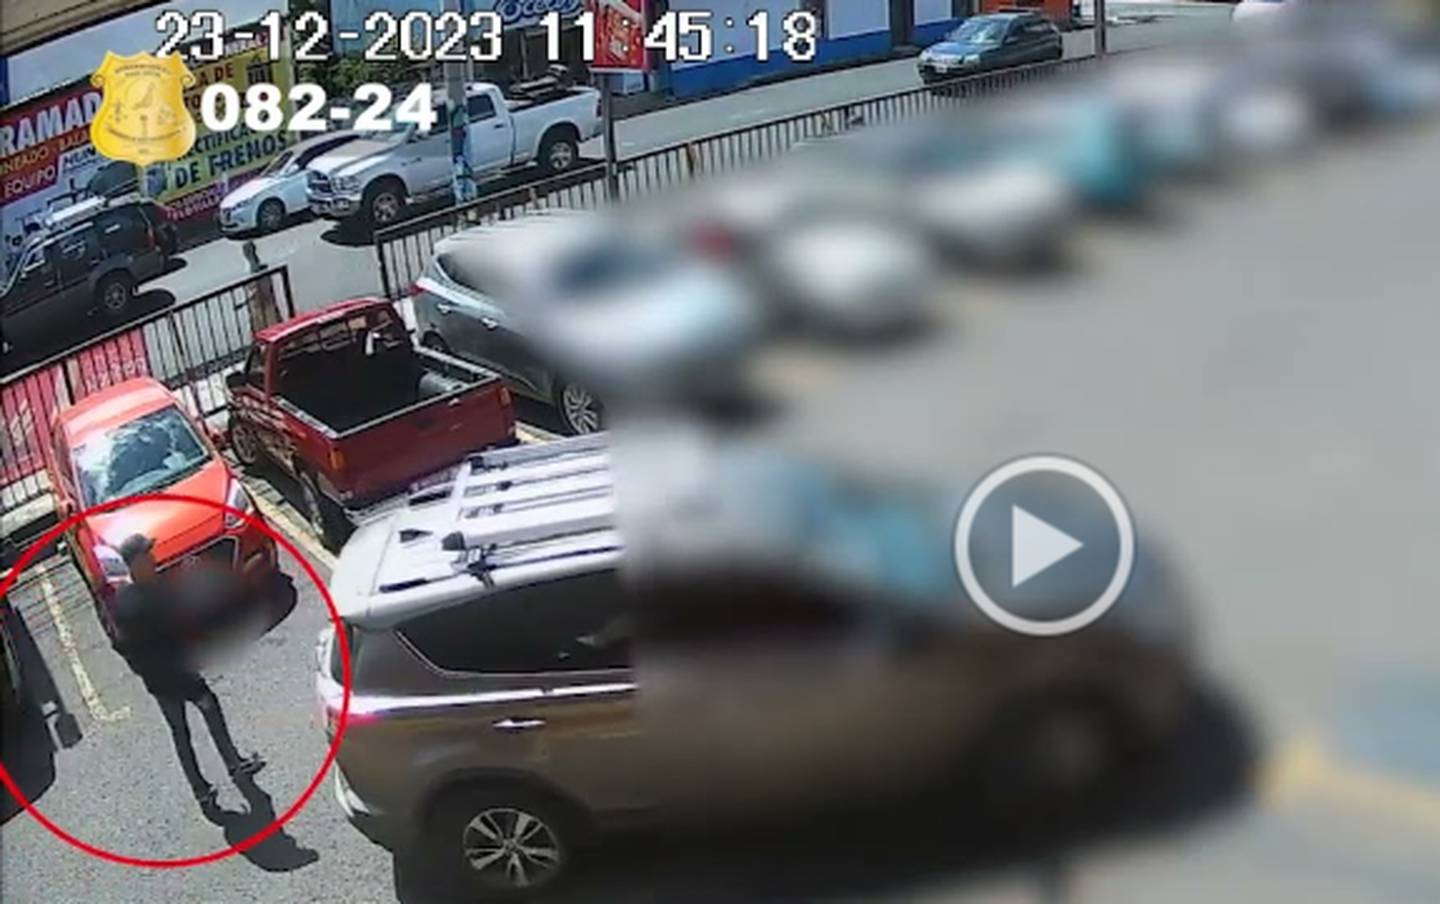 Los agentes de la sección de robo de vehículos del OIJ piden ayuda para dar con un sujeto que se robó un carro que estaba parqueado en el estacionamiento de un supermercado en el centro de Moravia, San josé. Foto: OIJ